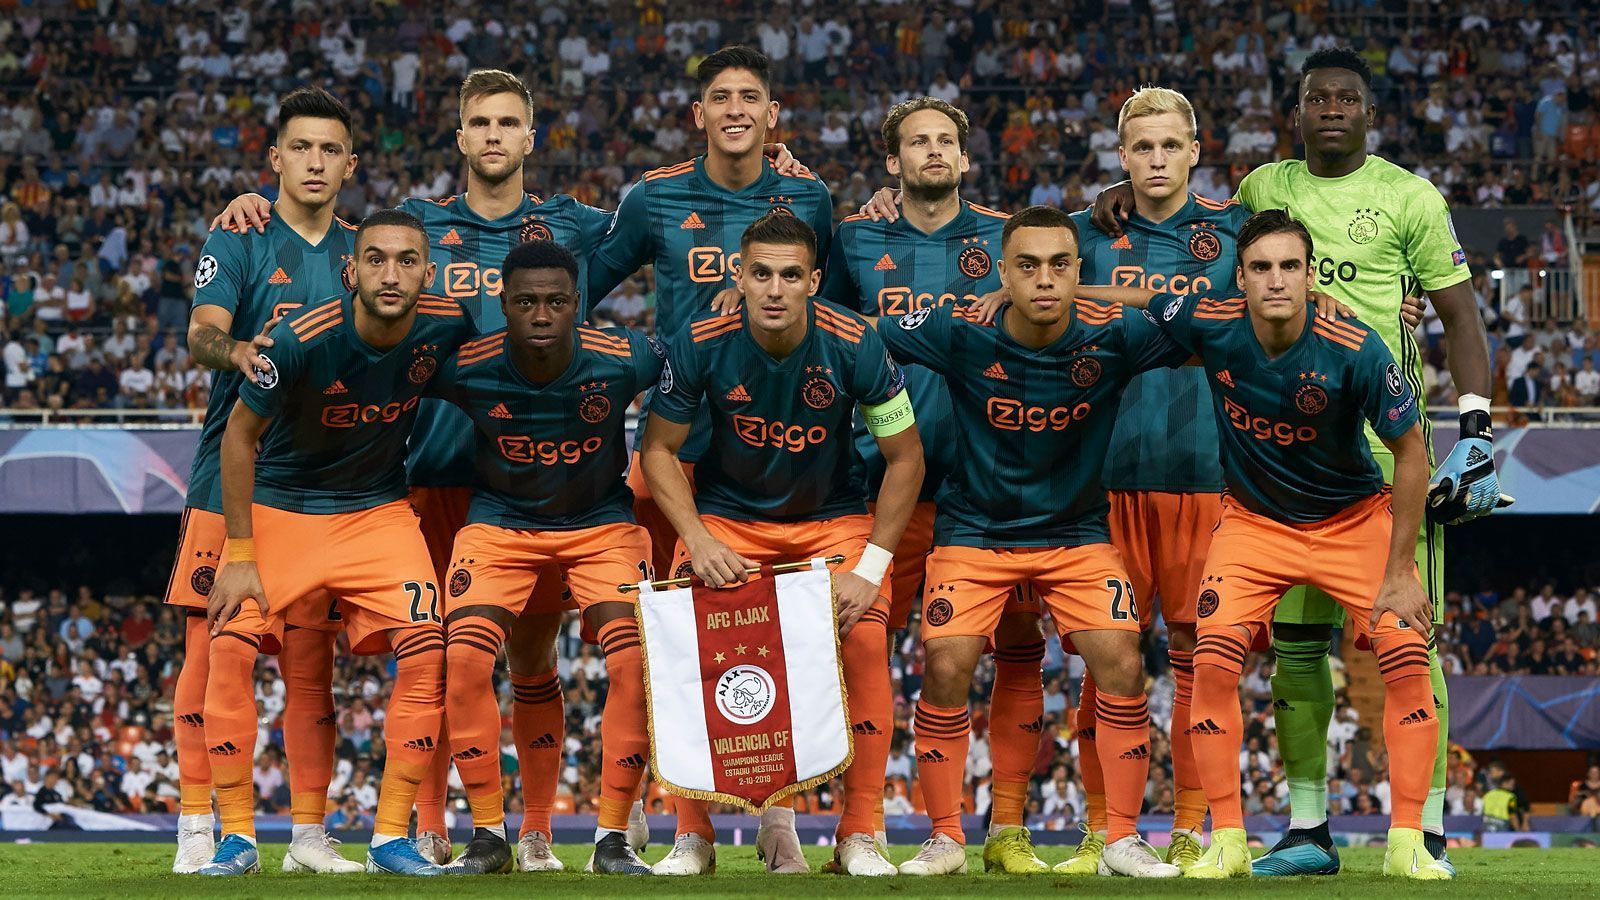 
                <strong>Platz 5: Ajax Amsterdam</strong><br>
                Ohne die abgewanderten Matthijs de Ligt und Frenkie de Jong ging der Halbfinalist des Vorjahres deutlich geschwächt in die aktuelle Saison. Doch bislang läuft alles nach Plan. In der niederländischen Eredivisie führt das Team von Erik ten Hag die Tabelle souverän an und präsentierte sich zuletzt in Torlaune. Gegen Feyenoord und Zwolle ließ es Ajax je viermal im gegnerischen Kasten scheppern. In der Königsklasse steht Ajax in Gruppe H mit sechs Punkten und nur einem Gegentor ebenfalls an der Spitze. Ten Hag gilt nach dem Kovac-Aus als einer der heißesten Kandidaten für den Trainerposten beim FC Bayern, will die Saison aber nach eigener Aussage auf jeden Fall bei Ajax durchziehen.
              